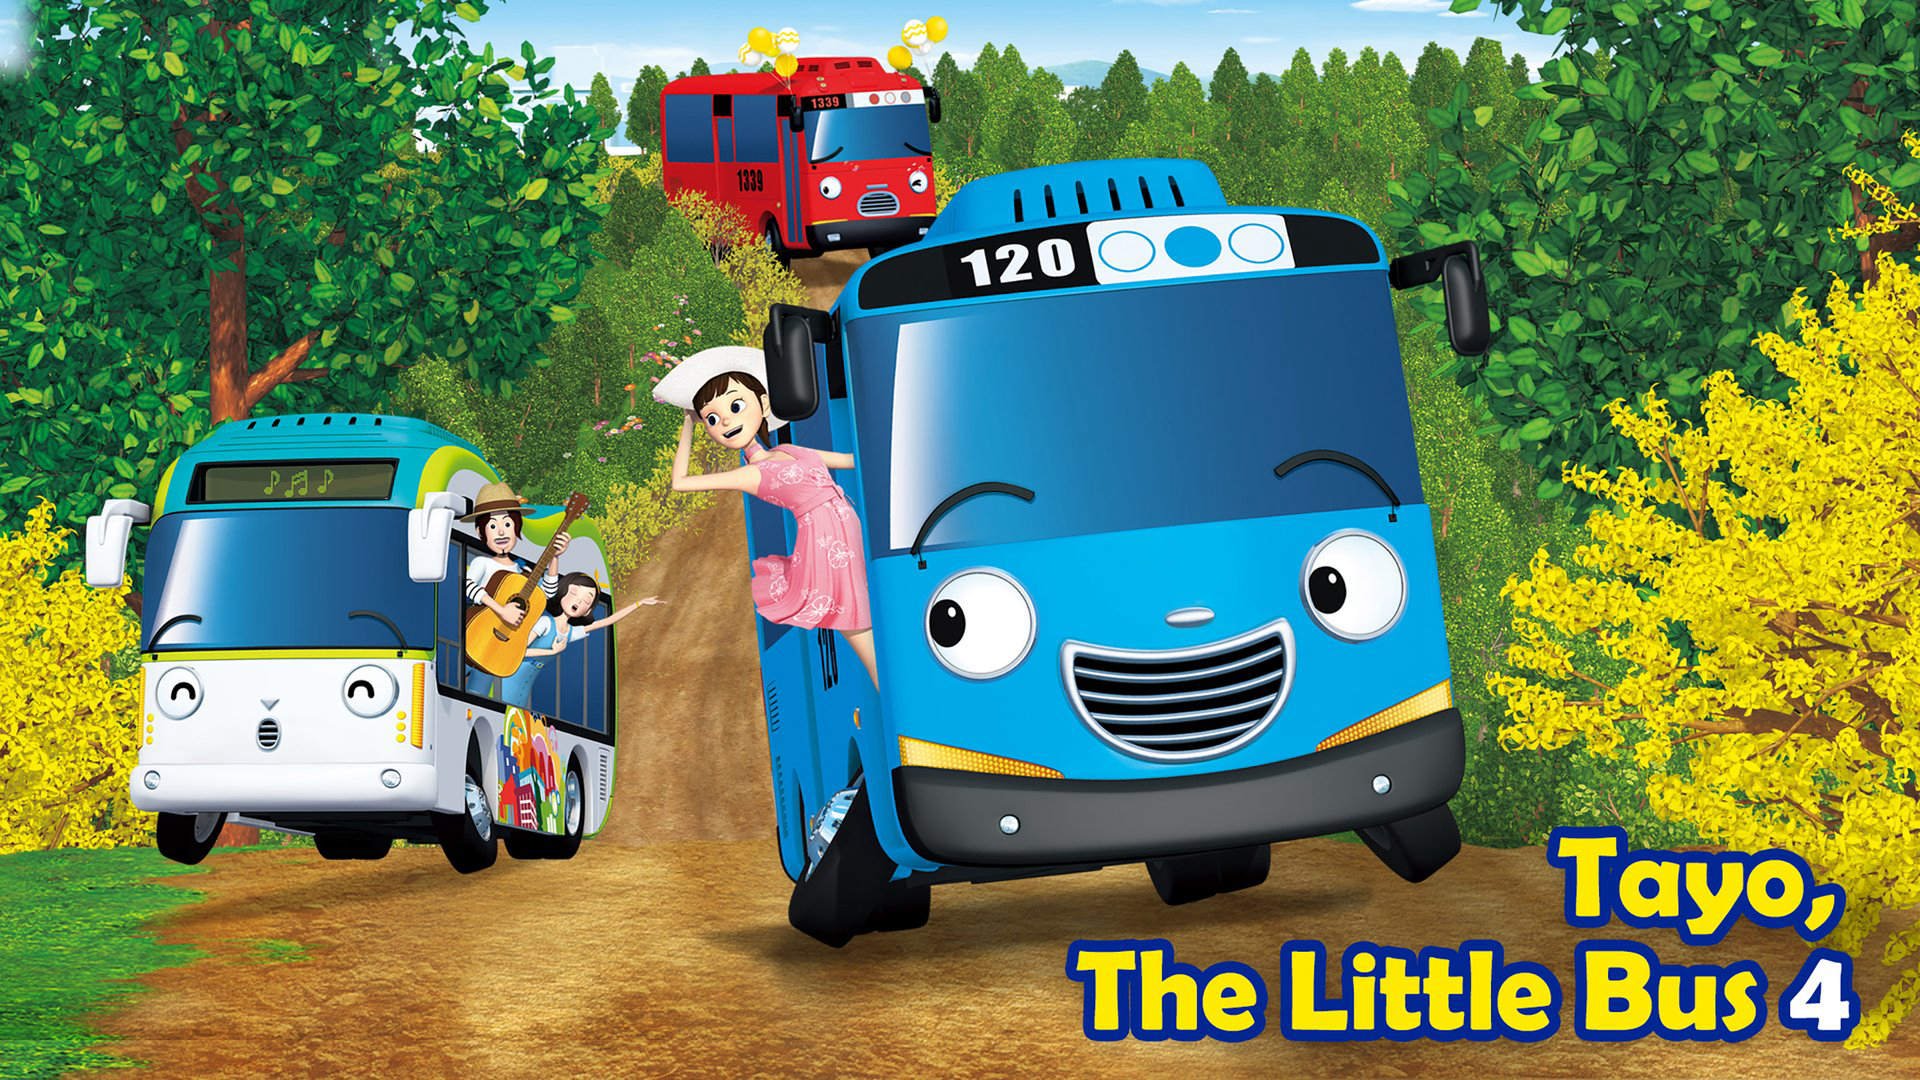 Tayo The Little Bus (Season 4) / Tayo The Little Bus (Season 4) (2016)